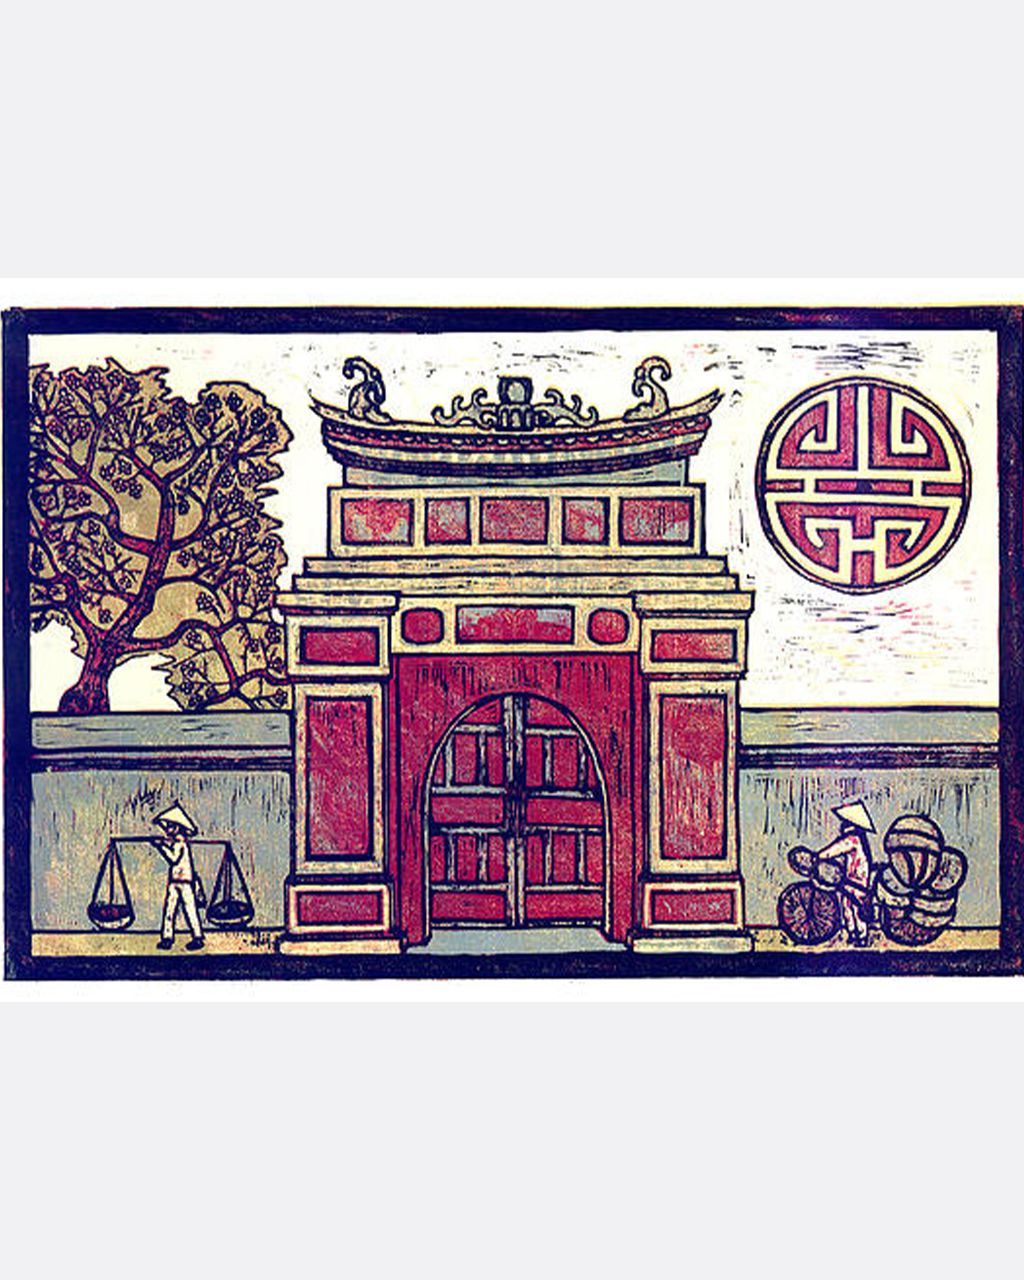  Hue Citadel - Cố Đô Huế 